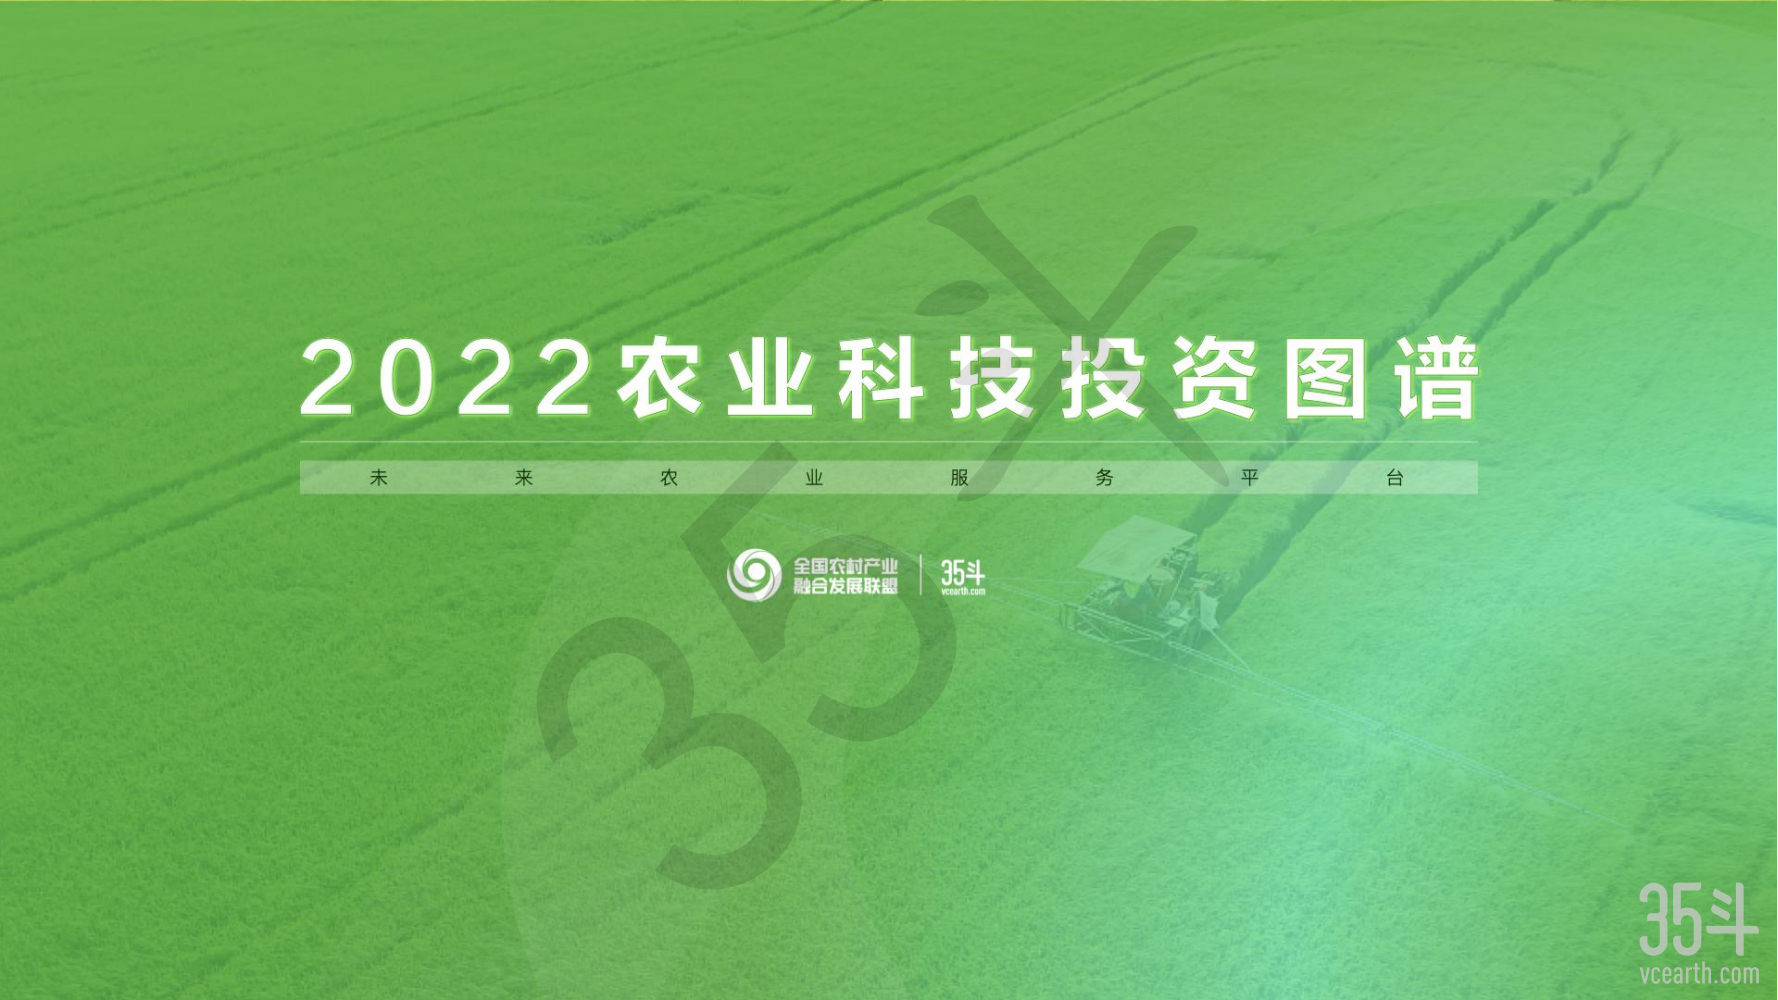 2022农业科技投资图谱摘要版pdf_00.png